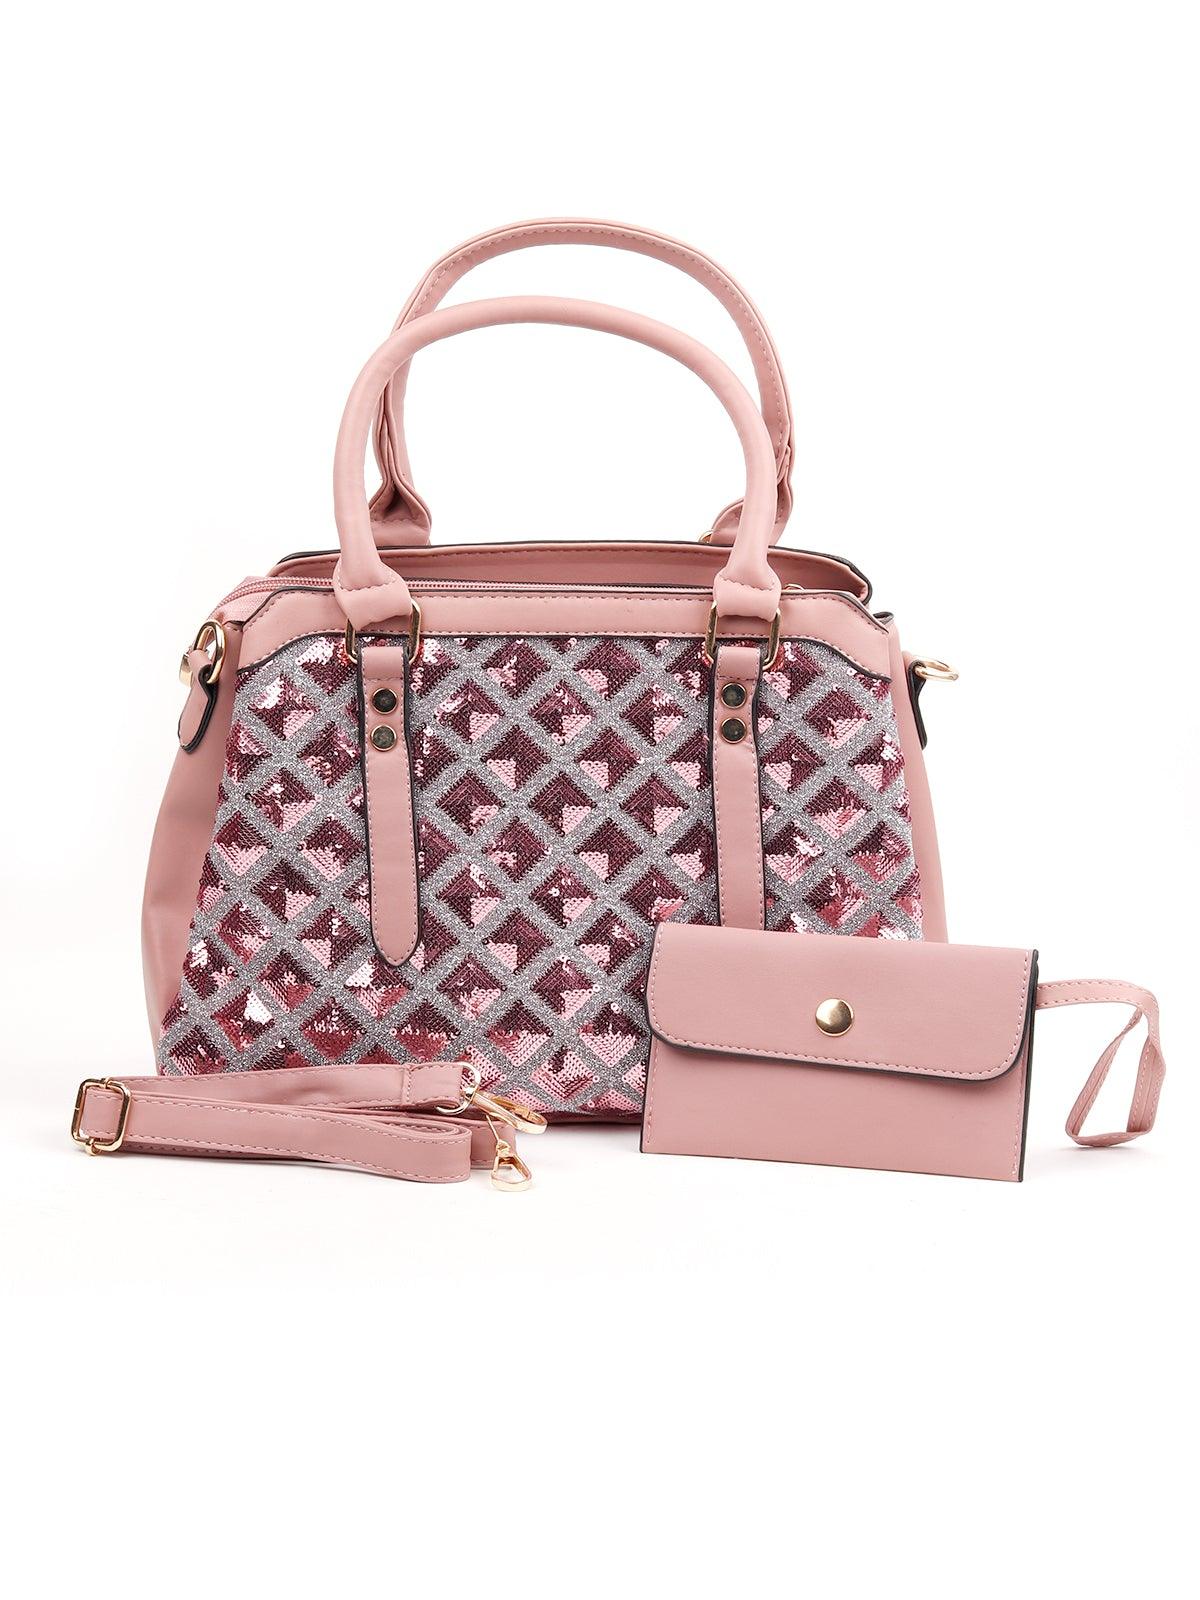 Baby Pink Coloured Sequences Handbag. - Odette